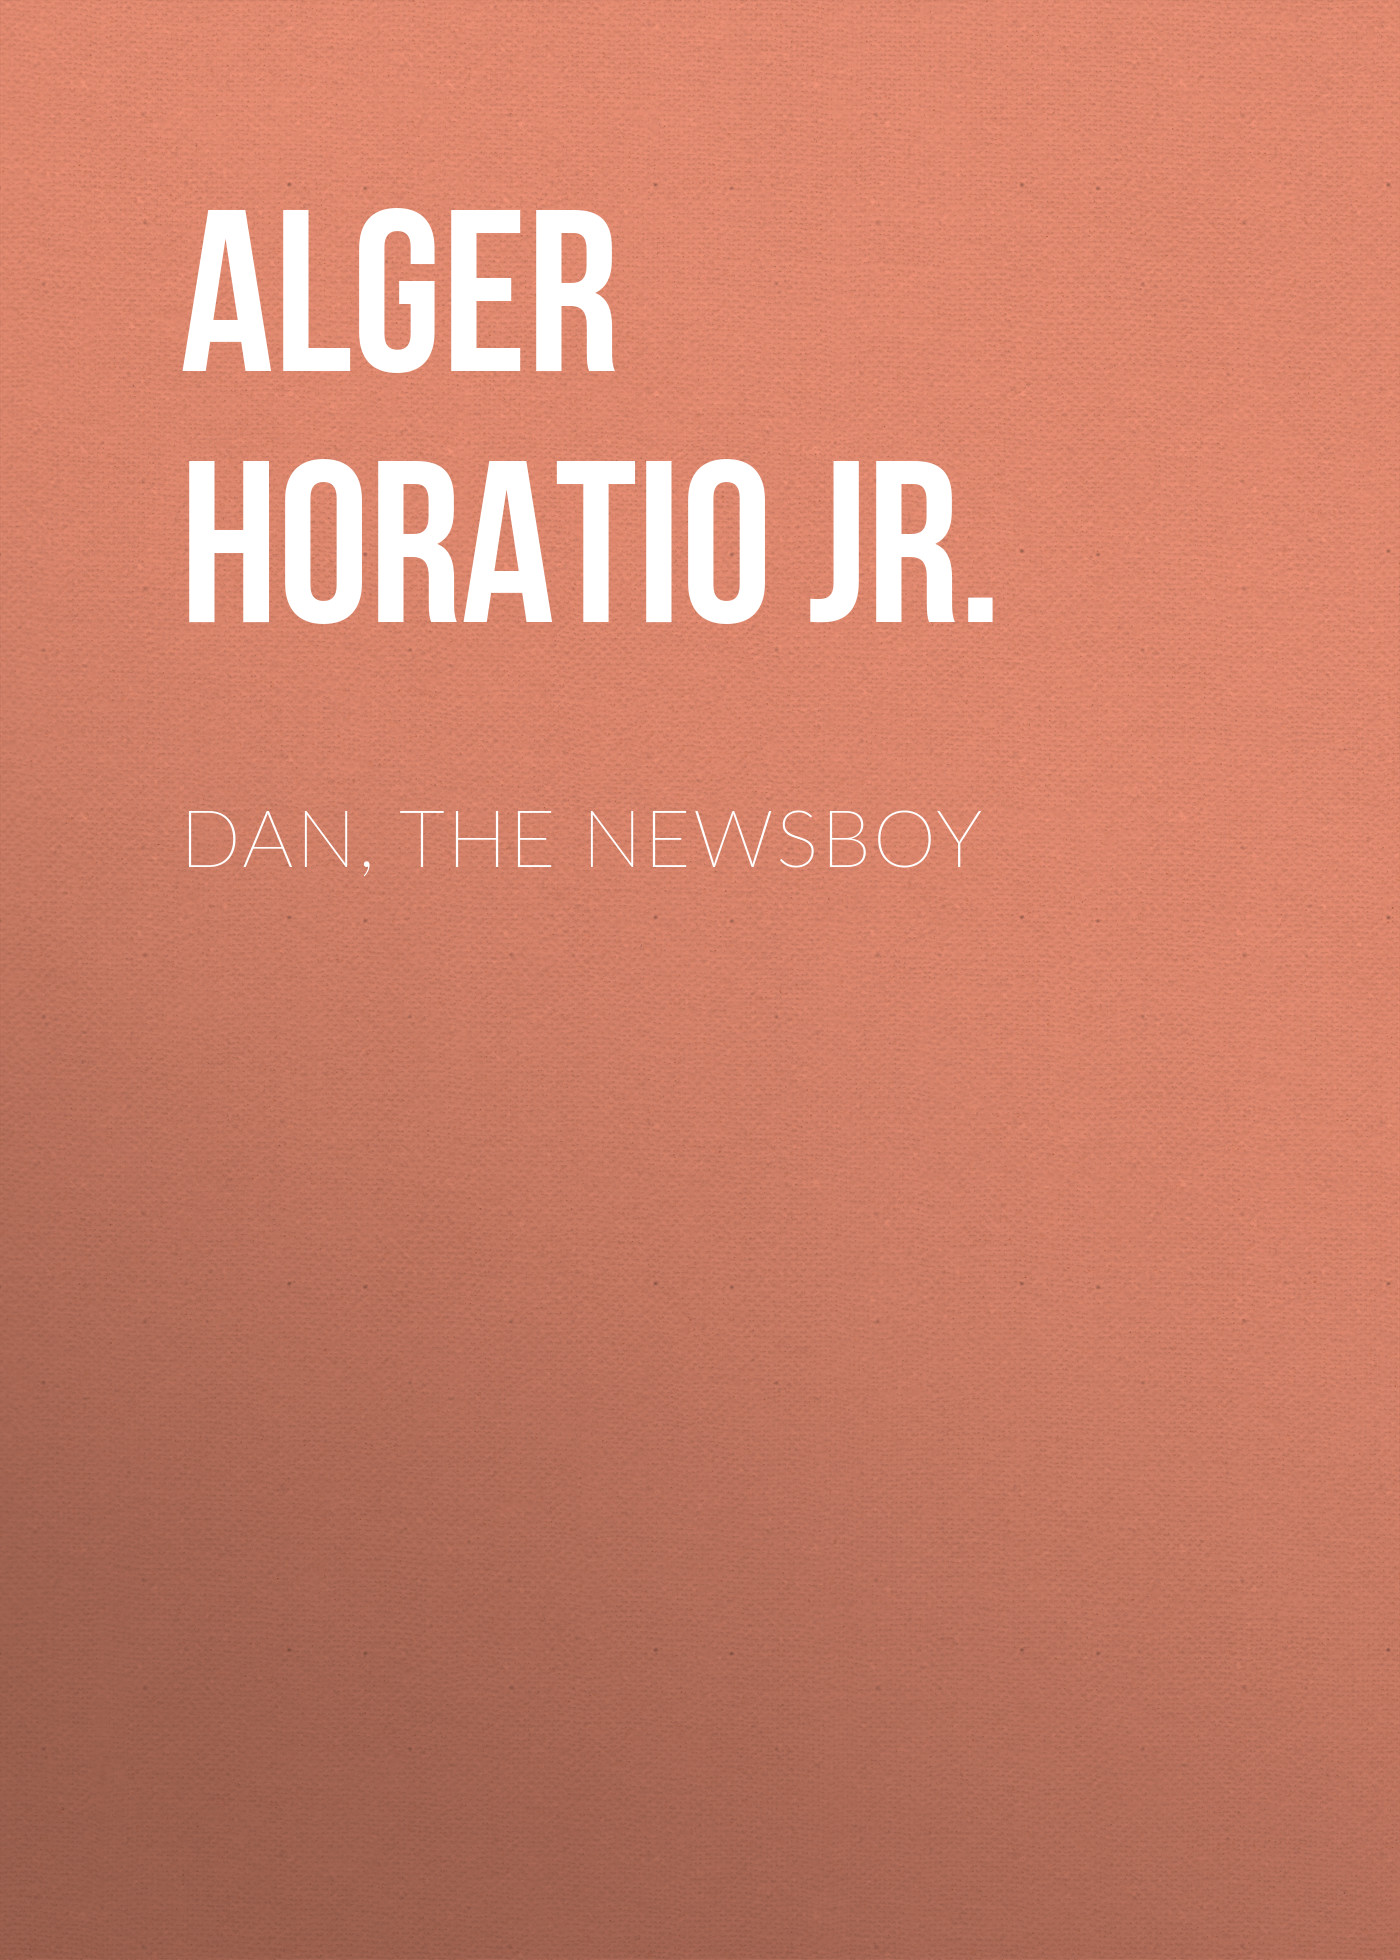 Книга Dan, The Newsboy из серии , созданная Horatio Alger, может относится к жанру Зарубежные детские книги, Литература 19 века, Зарубежная старинная литература, Зарубежная классика. Стоимость электронной книги Dan, The Newsboy с идентификатором 34841374 составляет 0 руб.